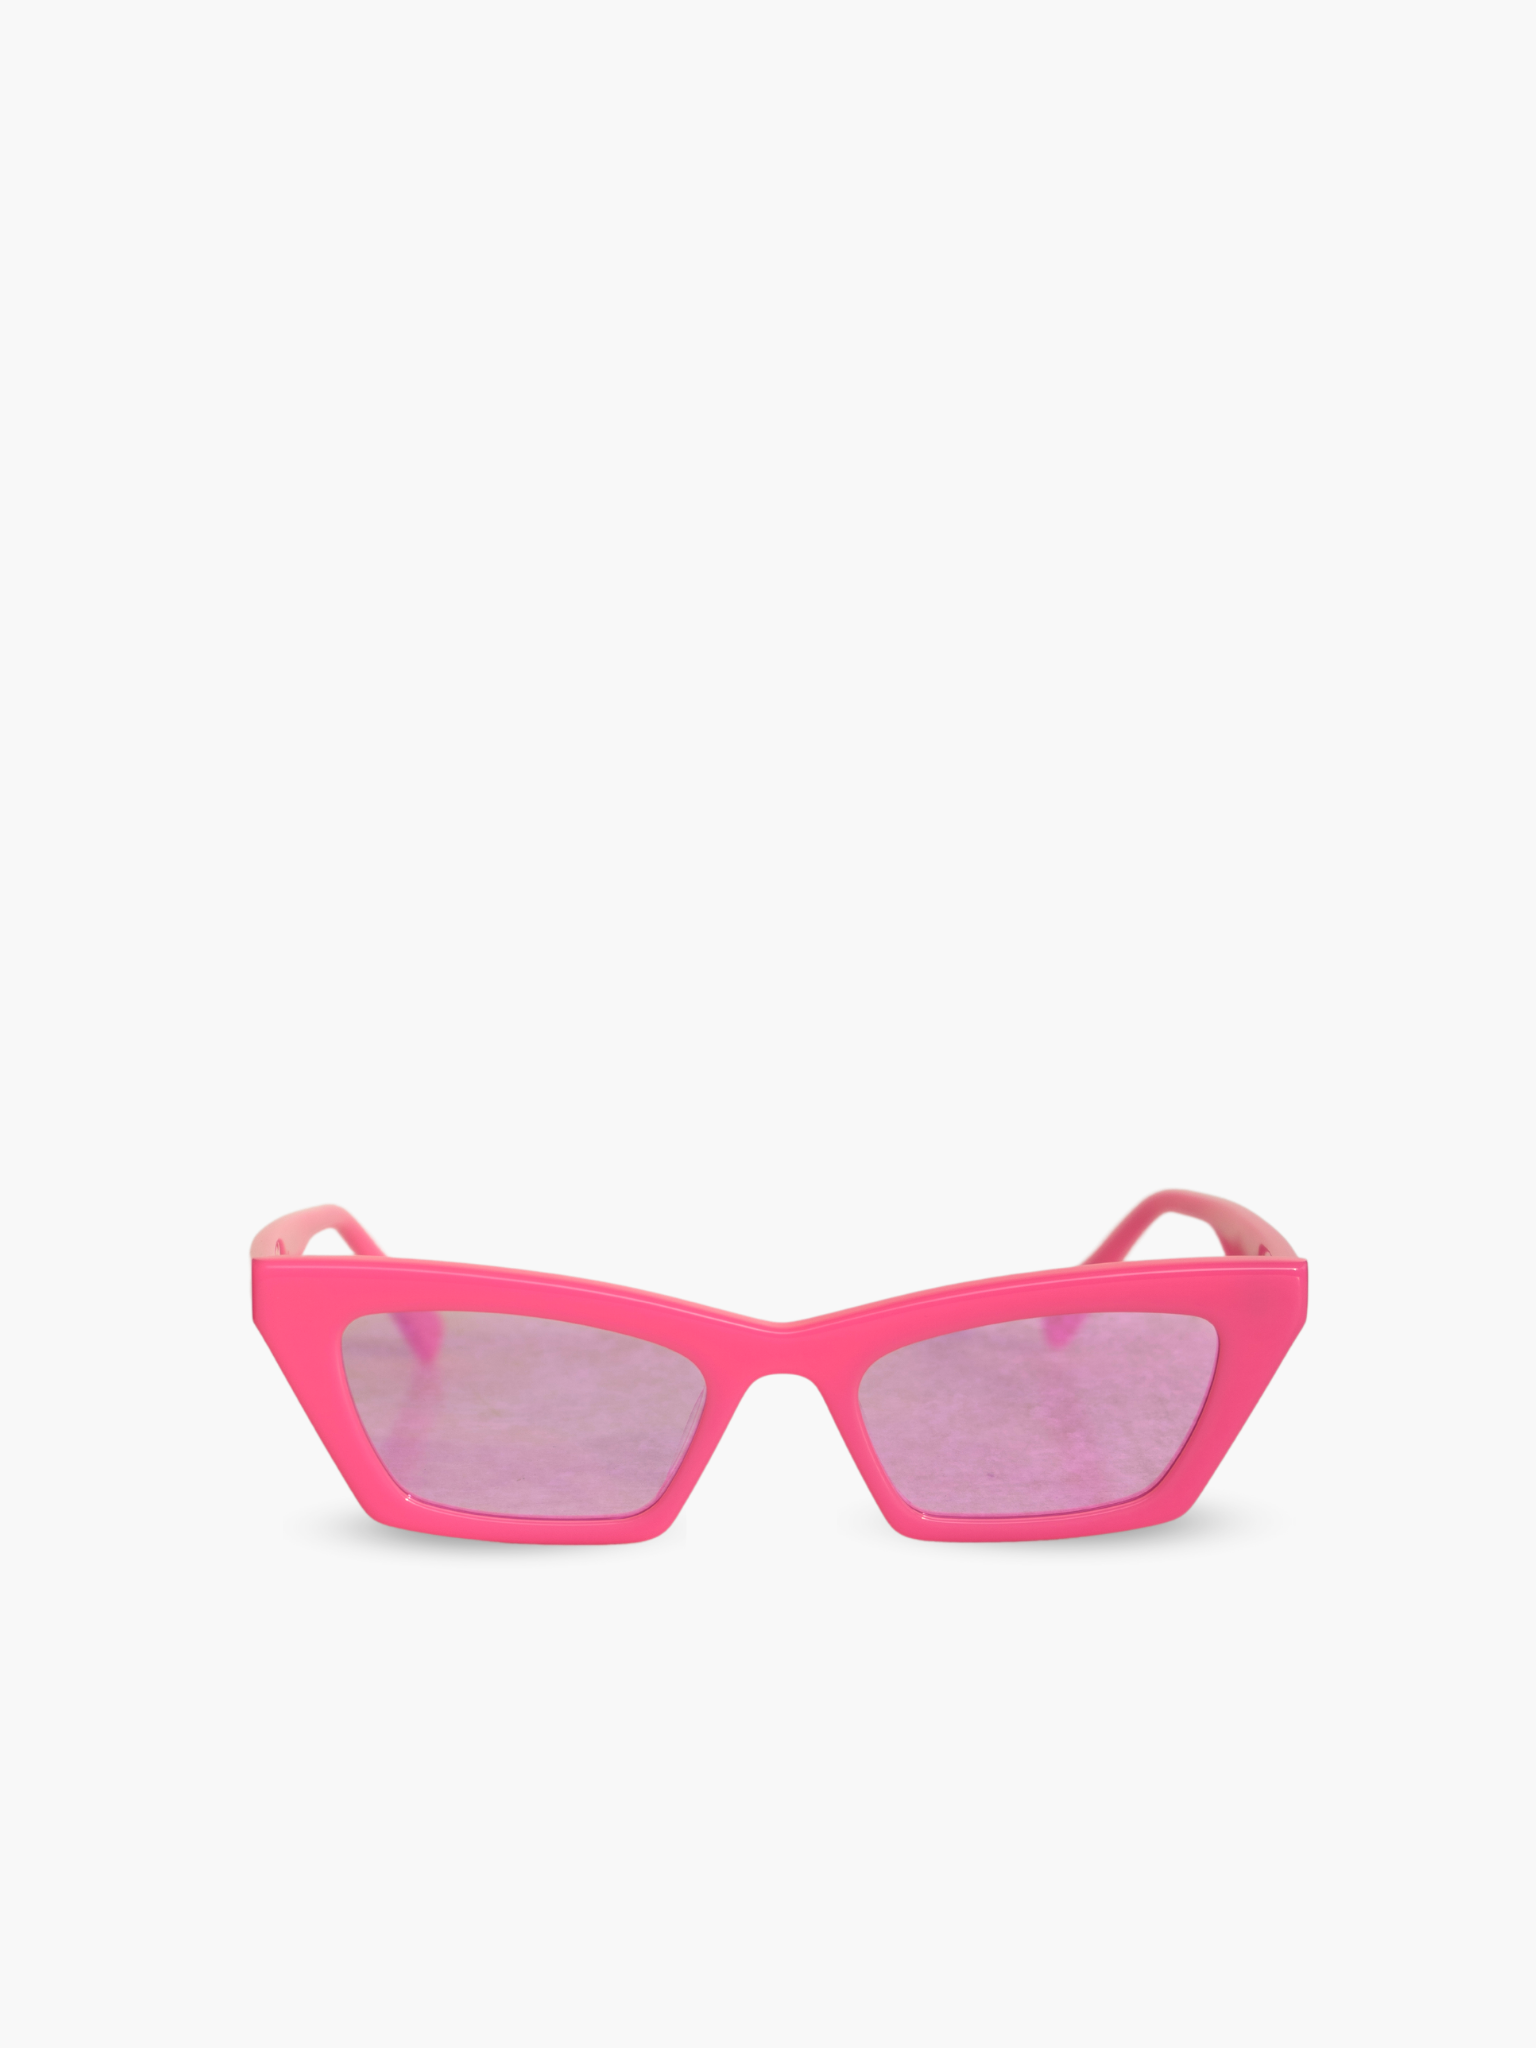 Occhiali da sole montatura color rosa acceso con lenti specchiate con riflesso rosa. Unisex e adatto alla maggior parte delle forme del viso. Le lenti sono antiriflesso e con protezione UV.